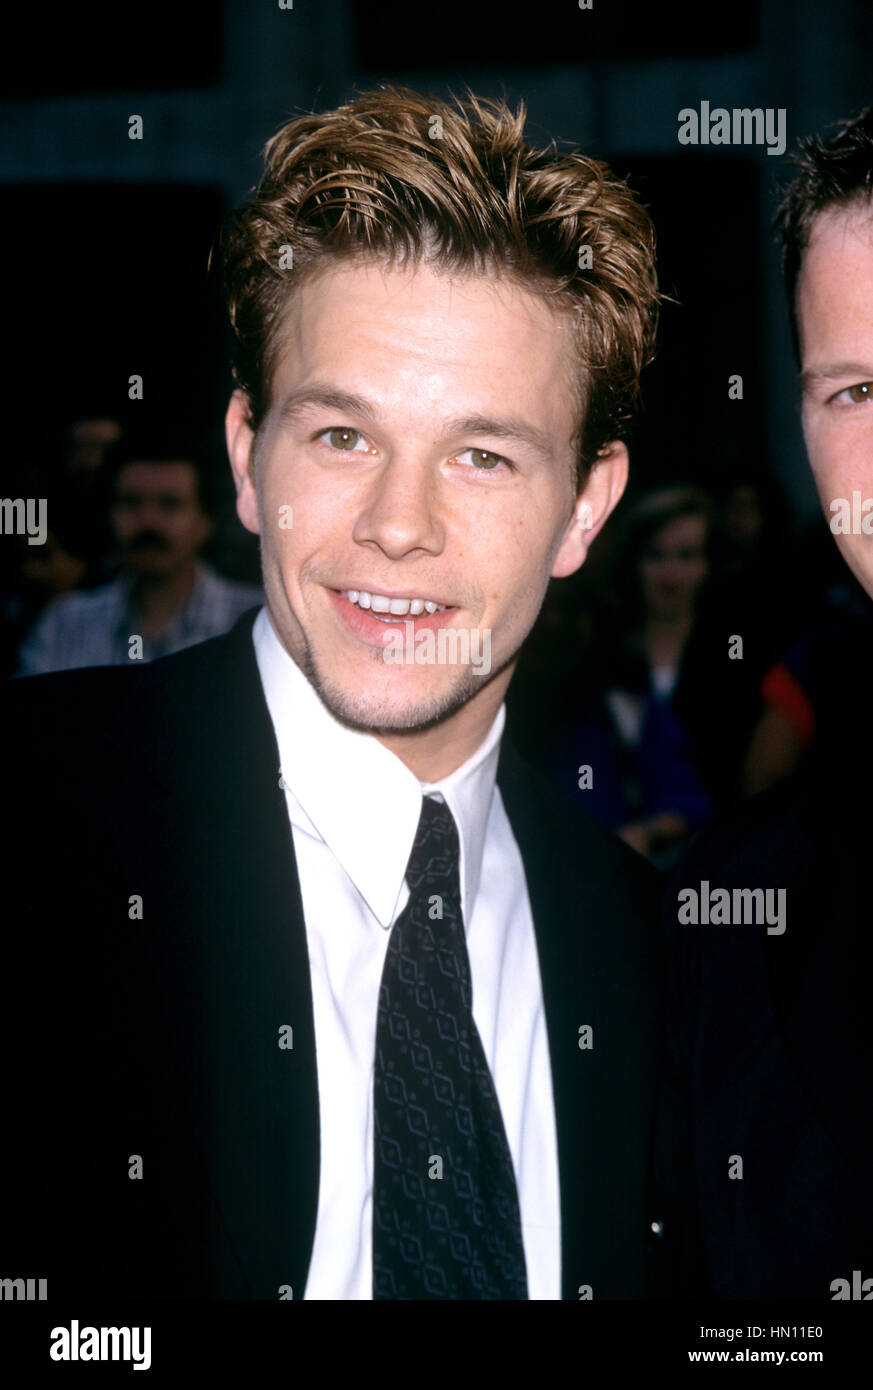 Mark Wahlberg im Bild bei der Premiere von "Boogie Nights" in der Alice Tully Hall in New York City am 9. Oktober 1997. Stockfoto